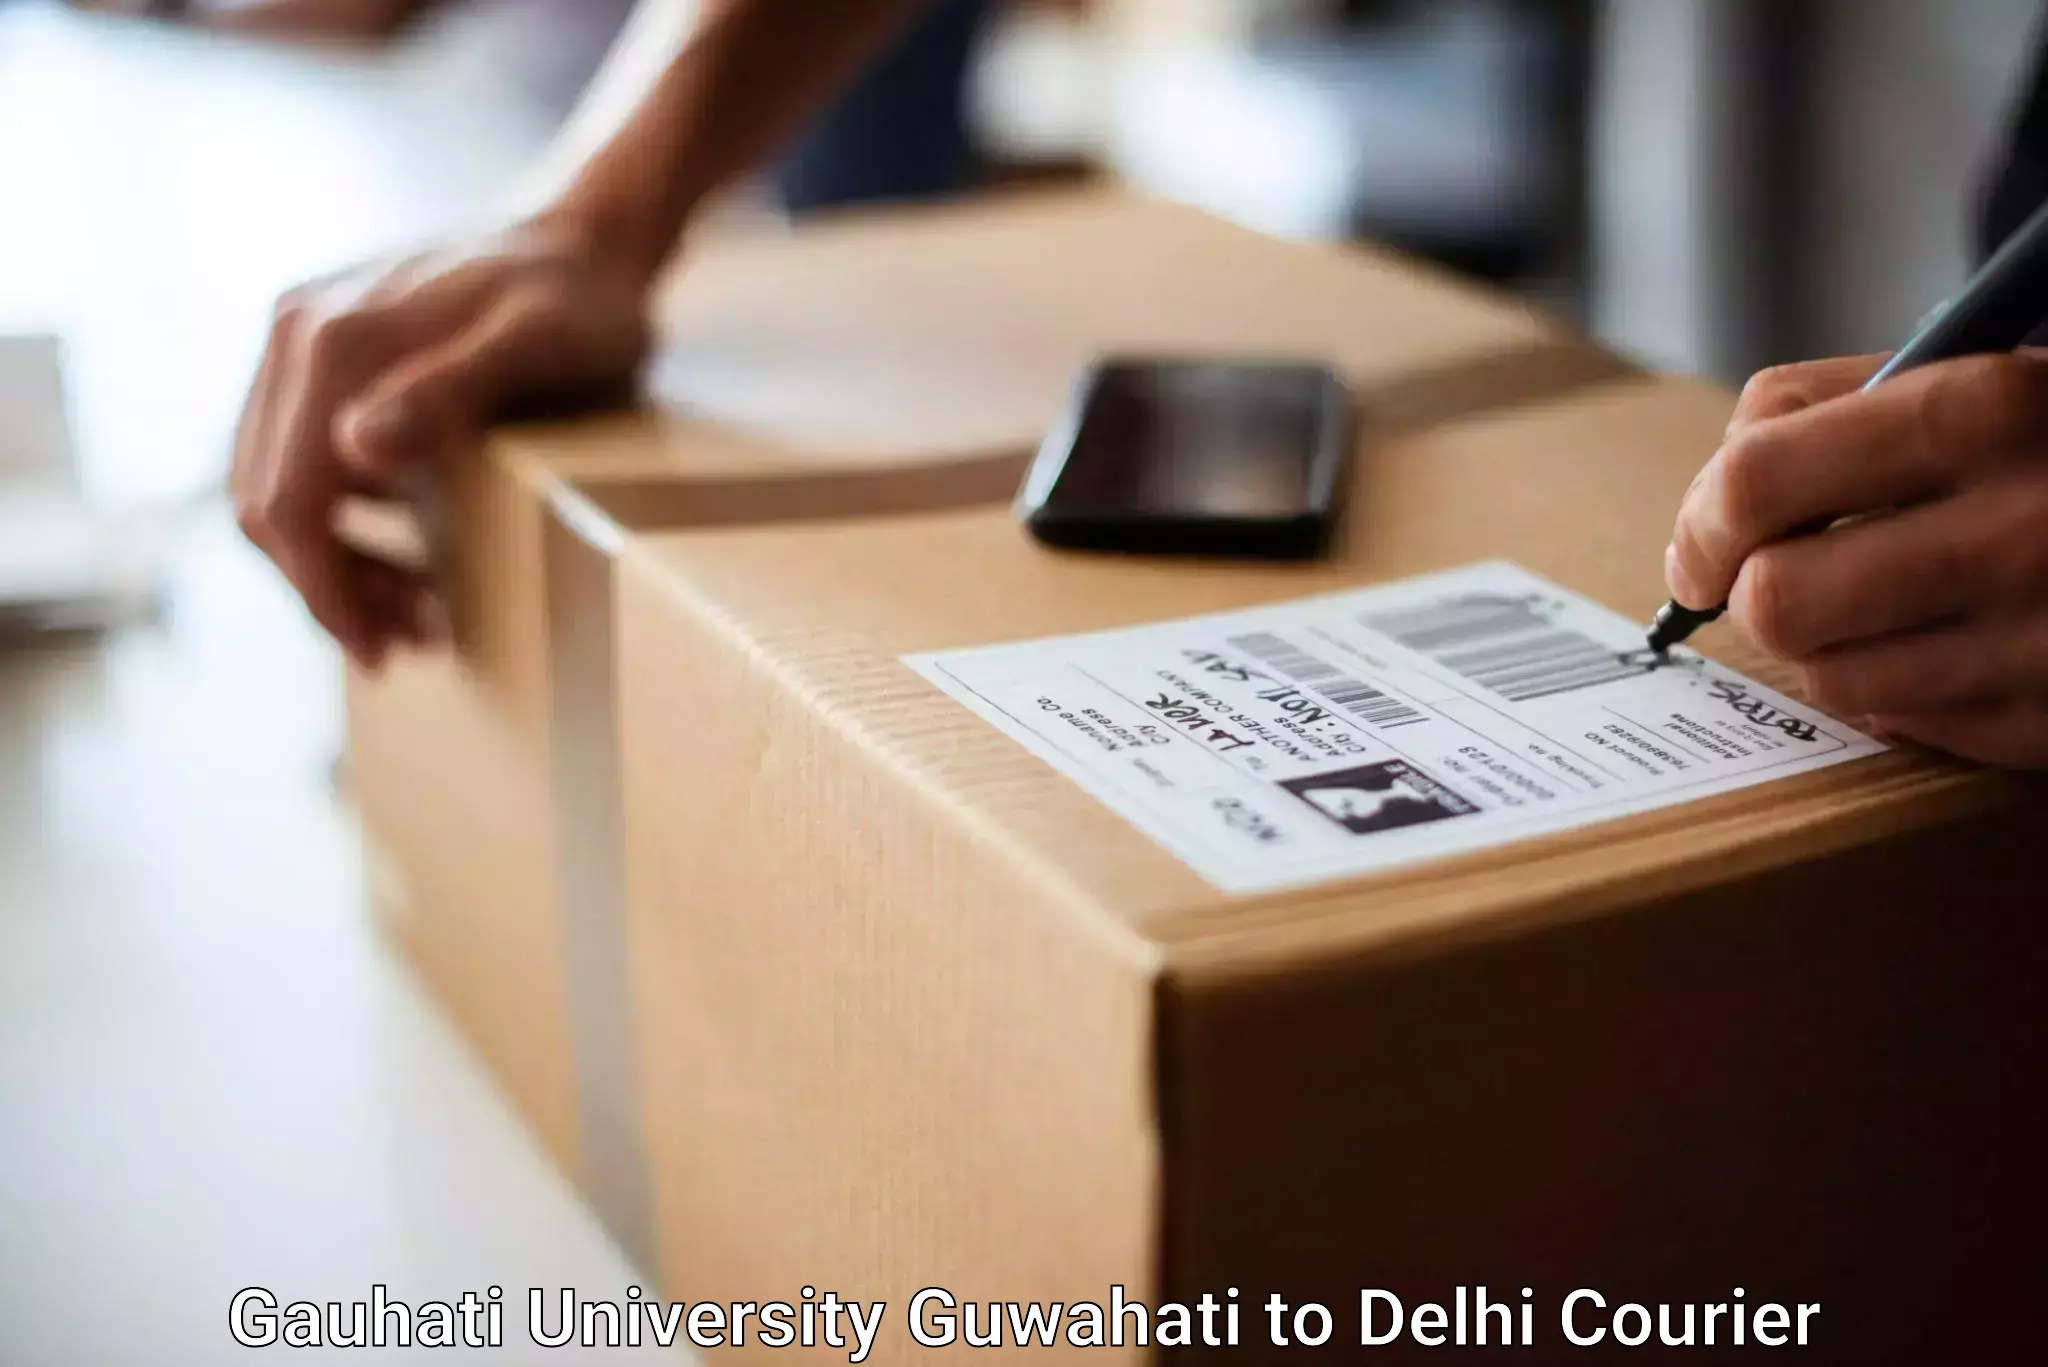 Luggage forwarding service Gauhati University Guwahati to University of Delhi